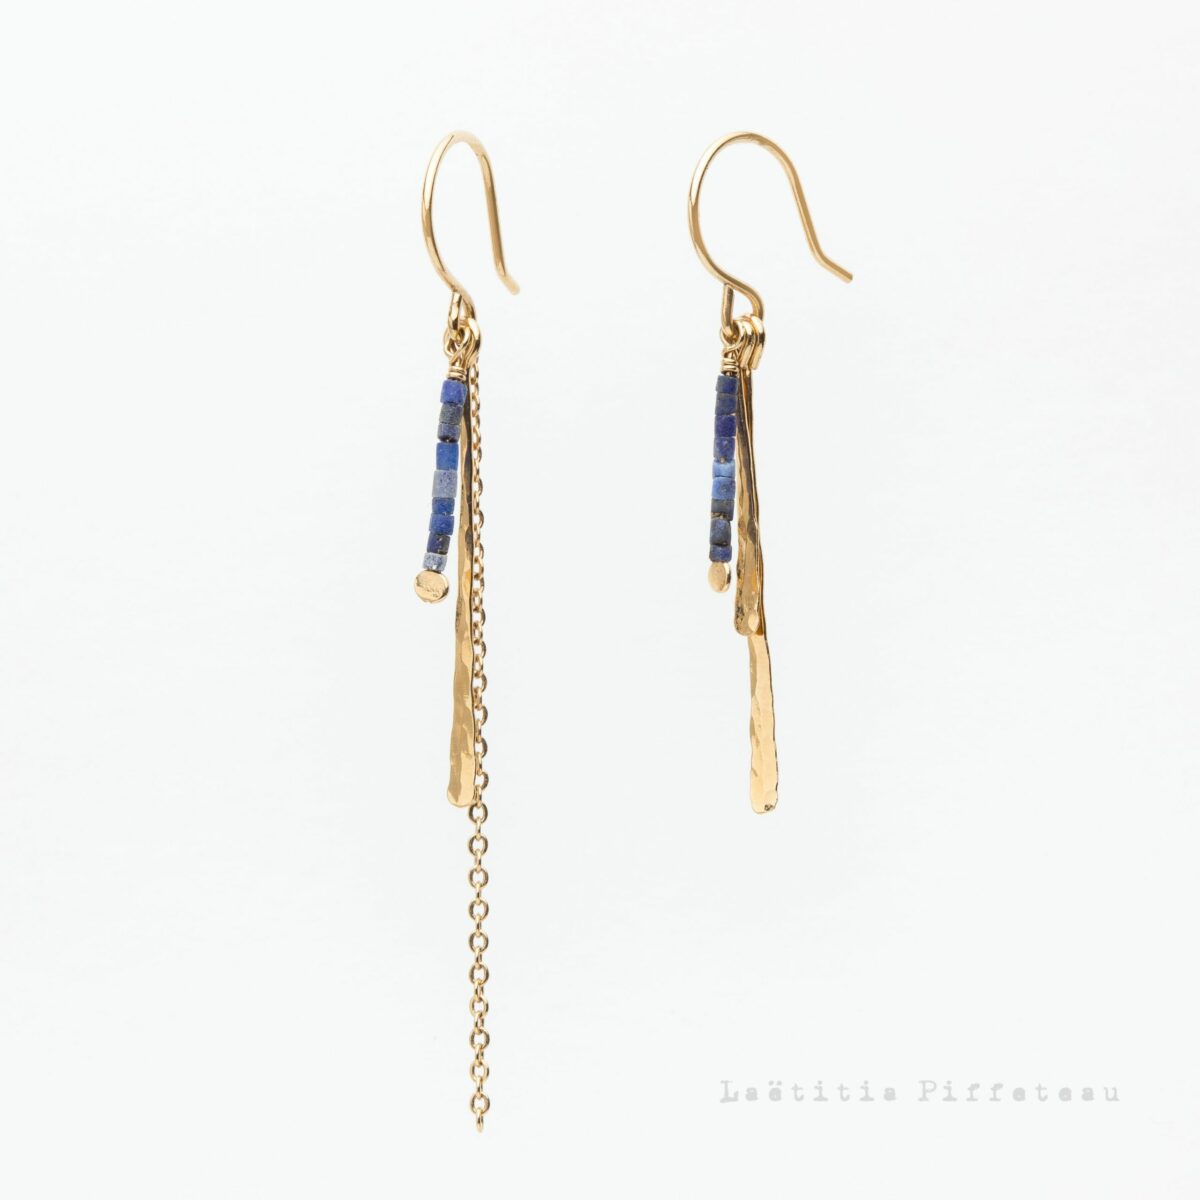 Boucles d'Oreilles LesLapis Asymétriques martelées, chaine et pierres naturelles lapis lazuli Laëtitia Piffeteau